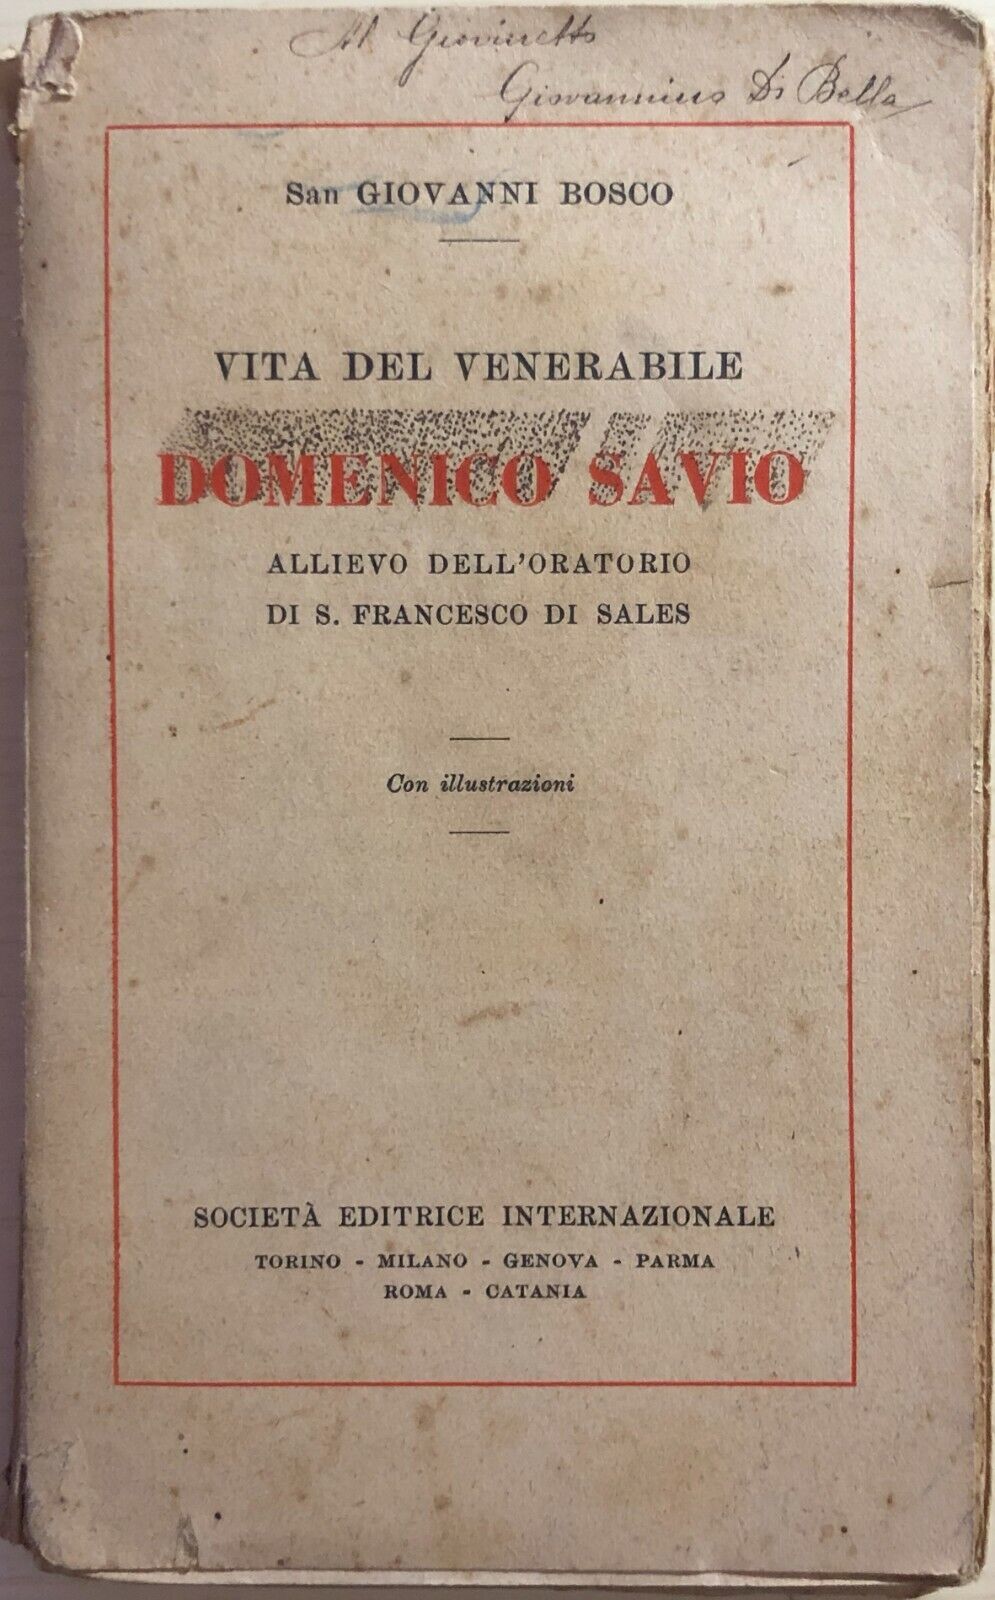 Vita del venerabile Domenico Savio di San Giovanni Bosco, 1934, Societ? editrice